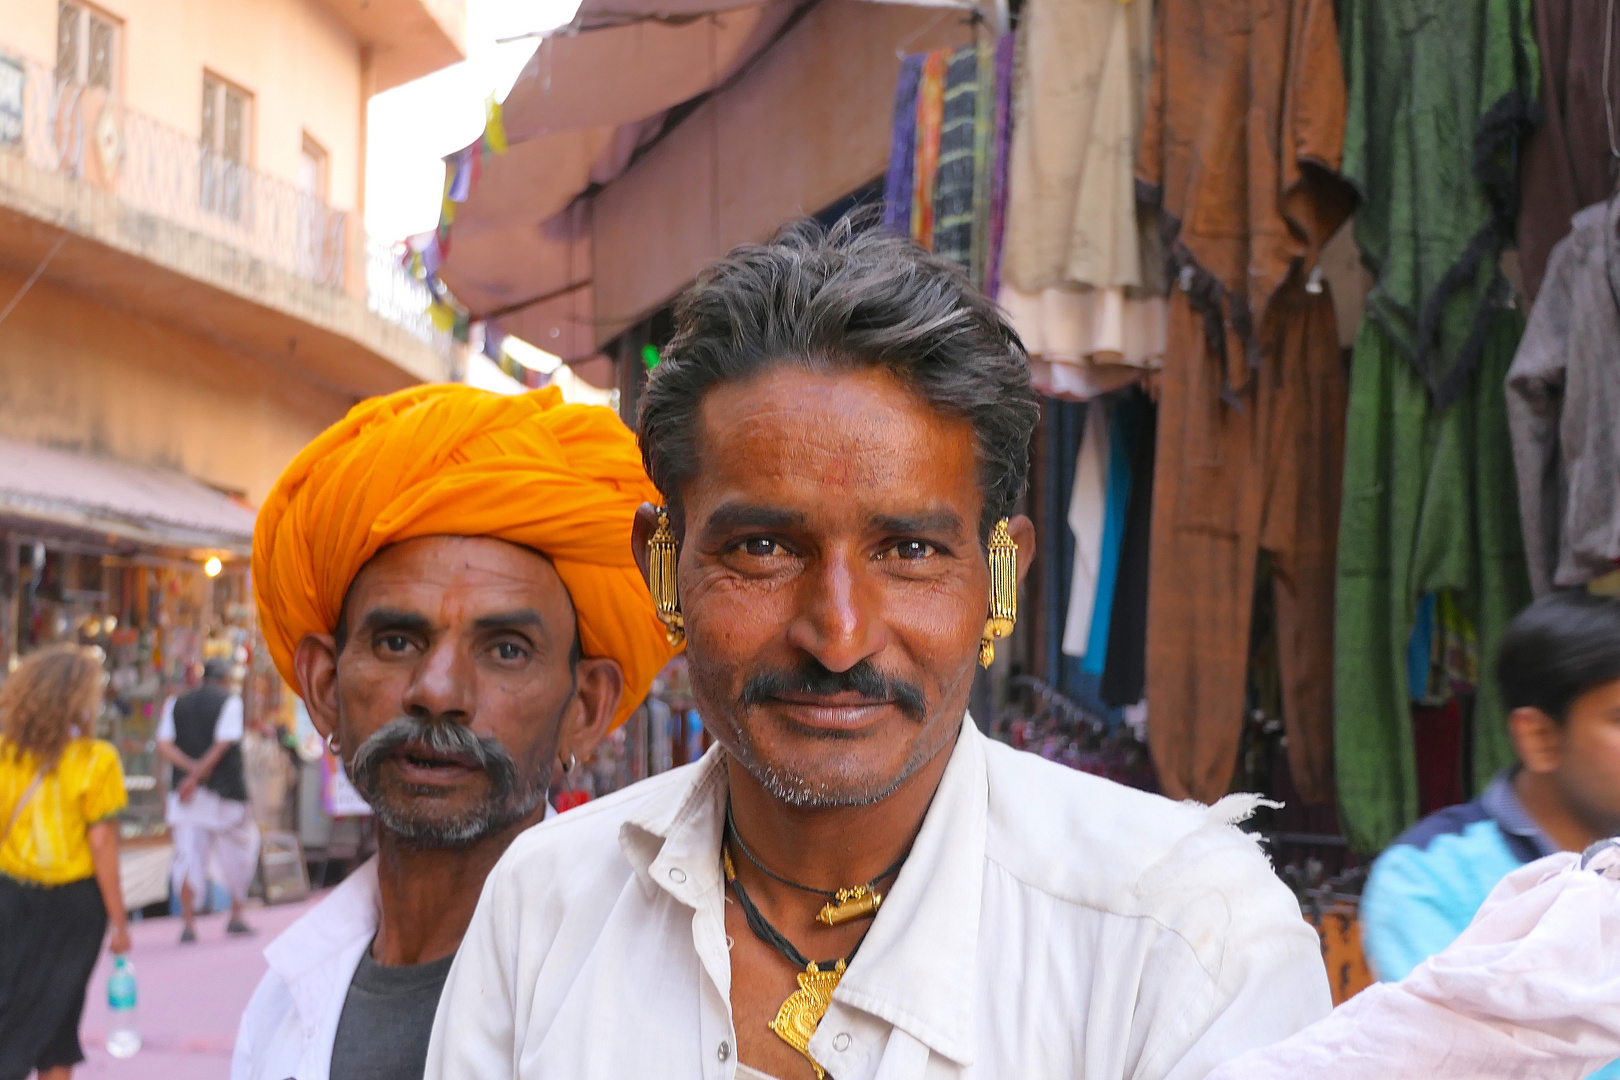 Männer in Indien